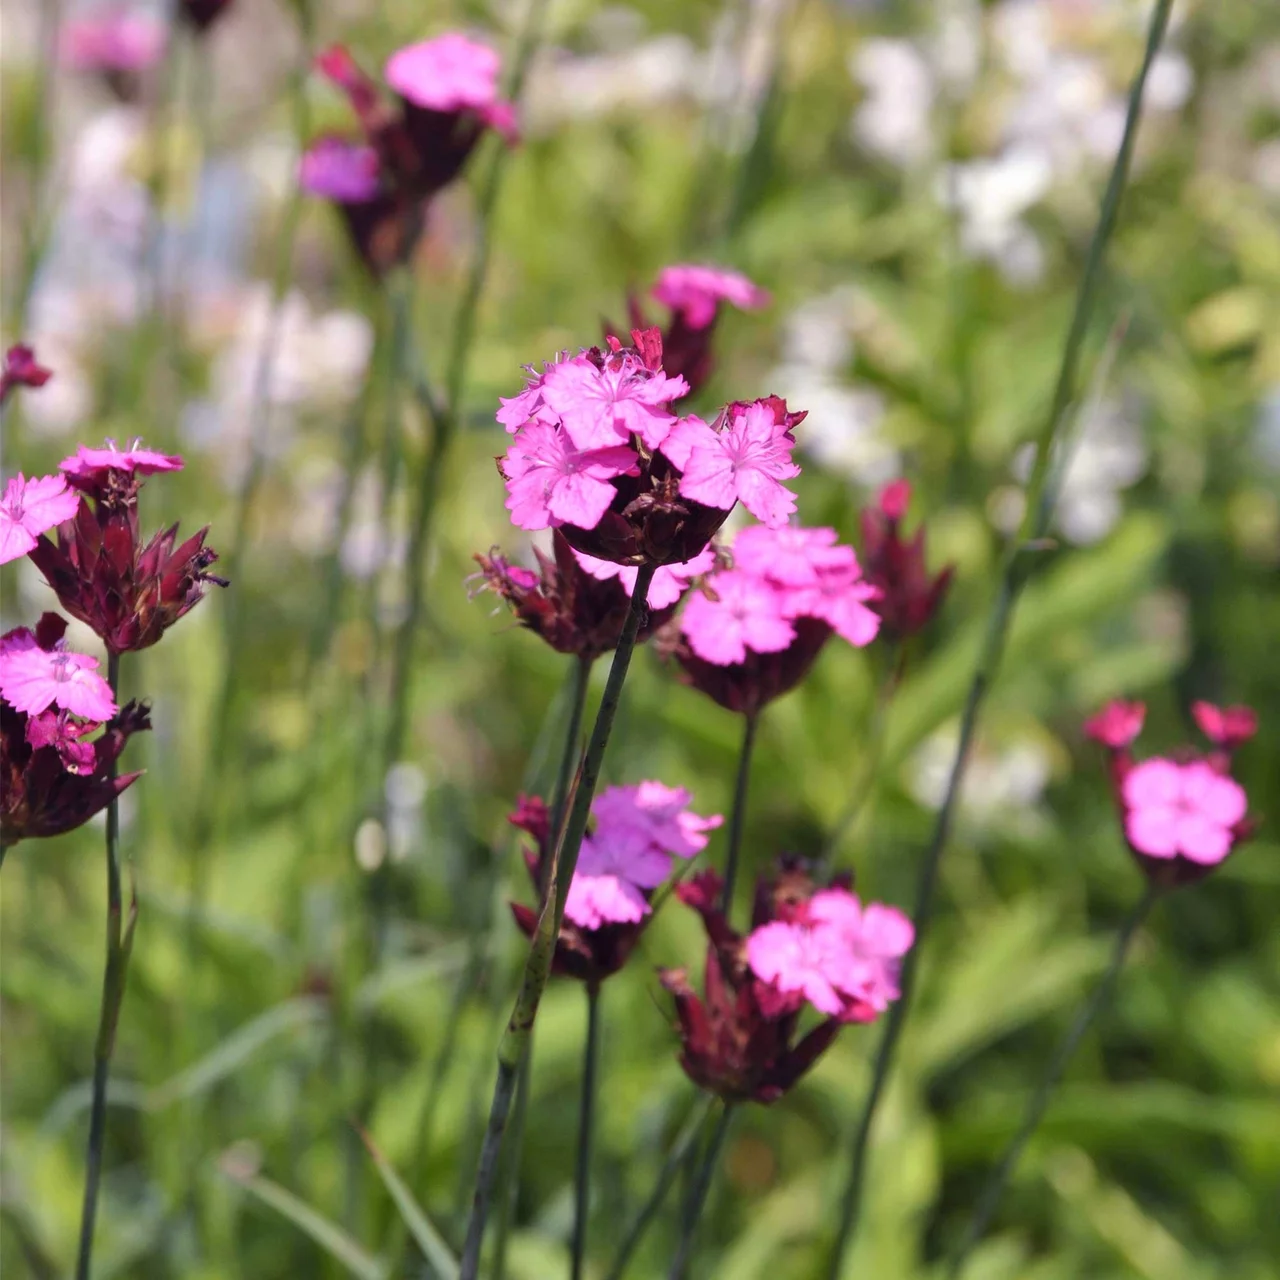 Oeillet des Chartreux – Vivaces fleuries biologiques